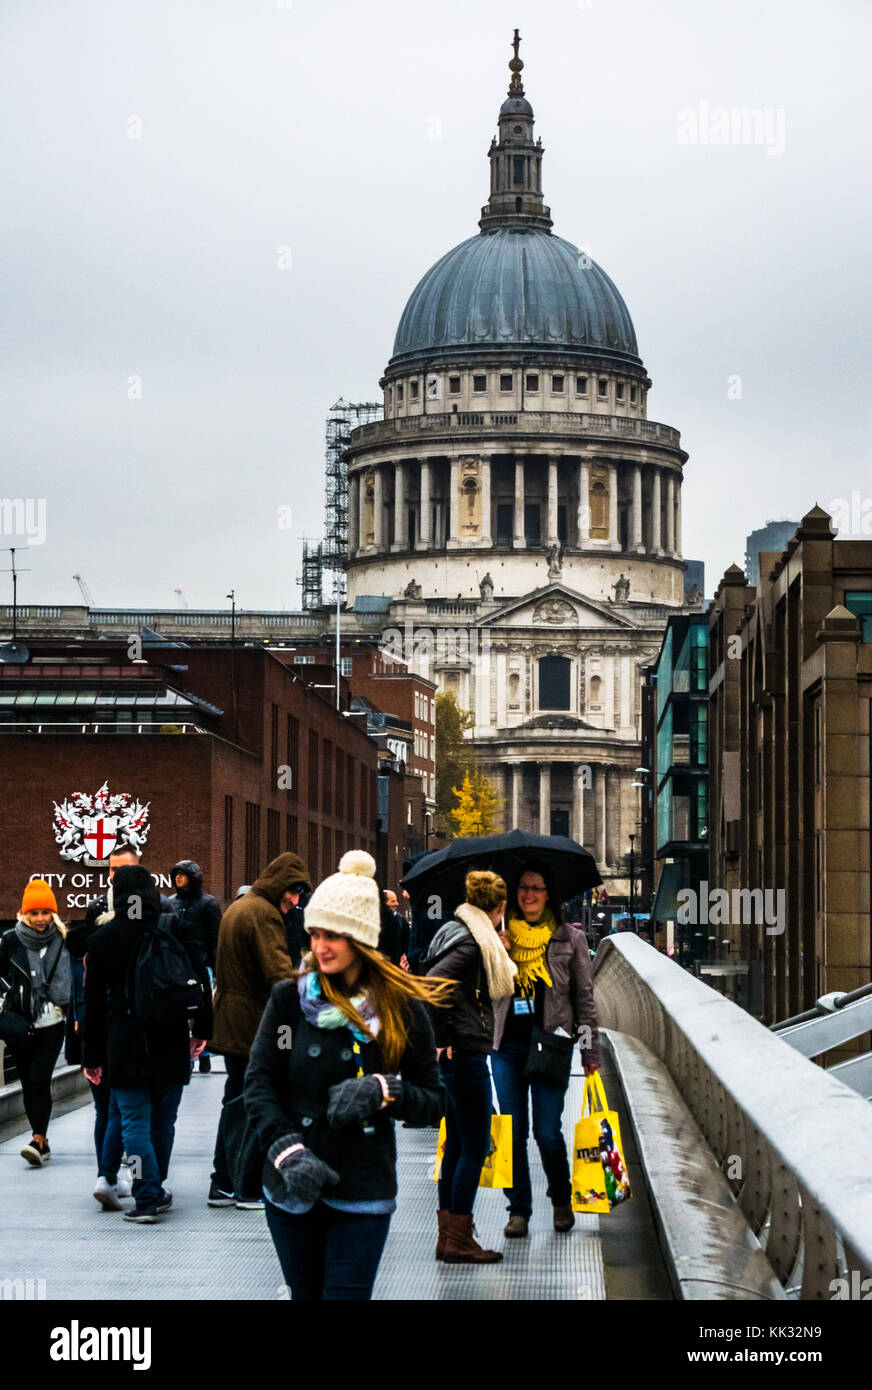 La gente che camminava sul Millennium Bridge sul giorno di pioggia alla Cattedrale di St Paul e la City of London School, Thames, Inghilterra, Regno Unito Foto Stock